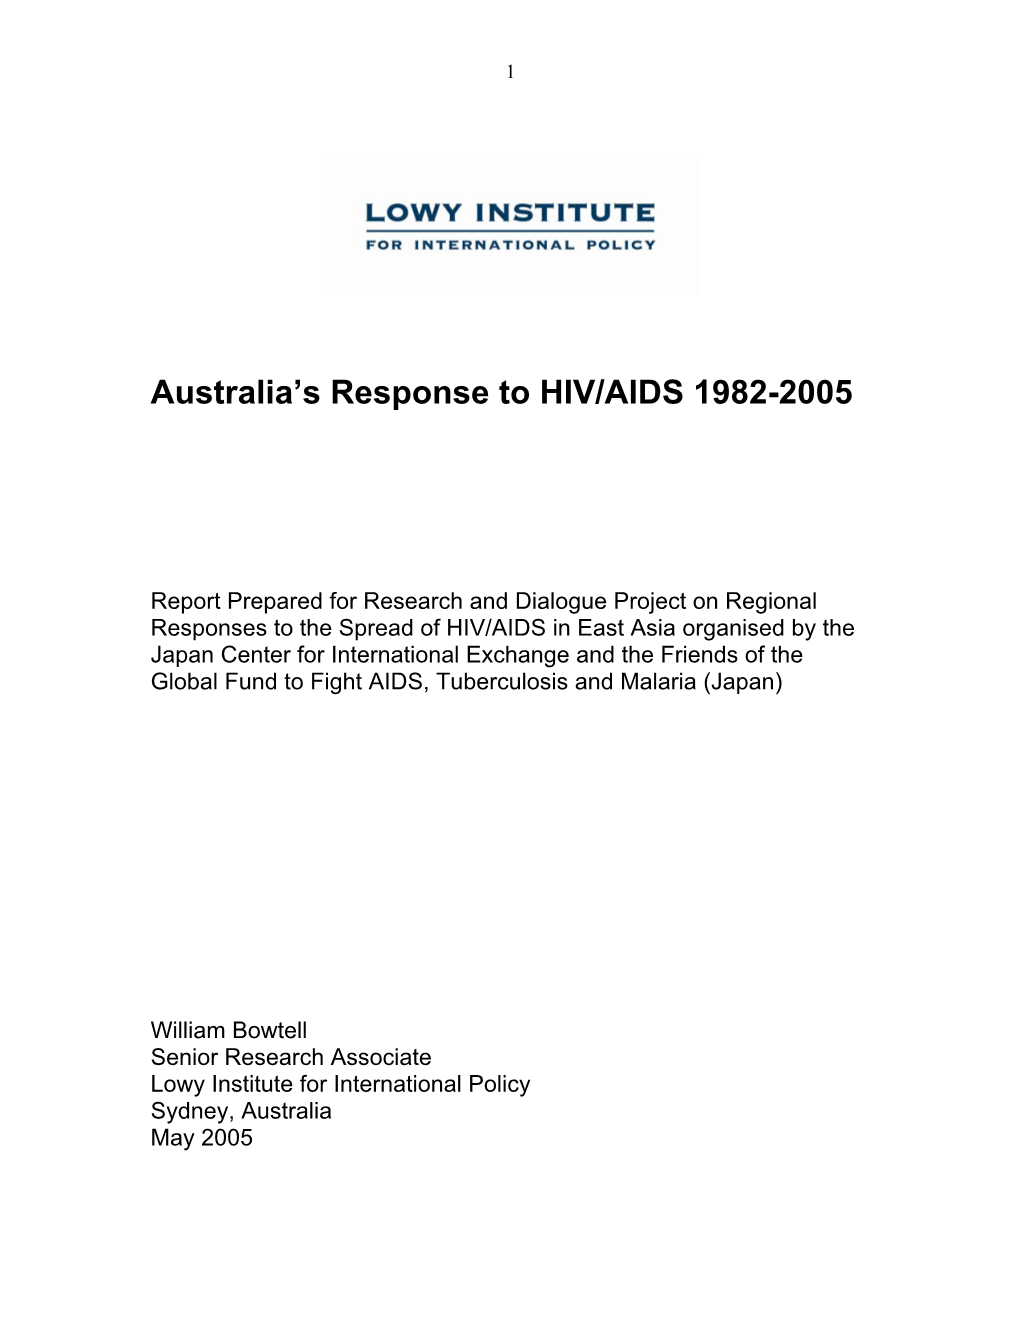 Australia's Response to HIV/AIDS 1982-2005